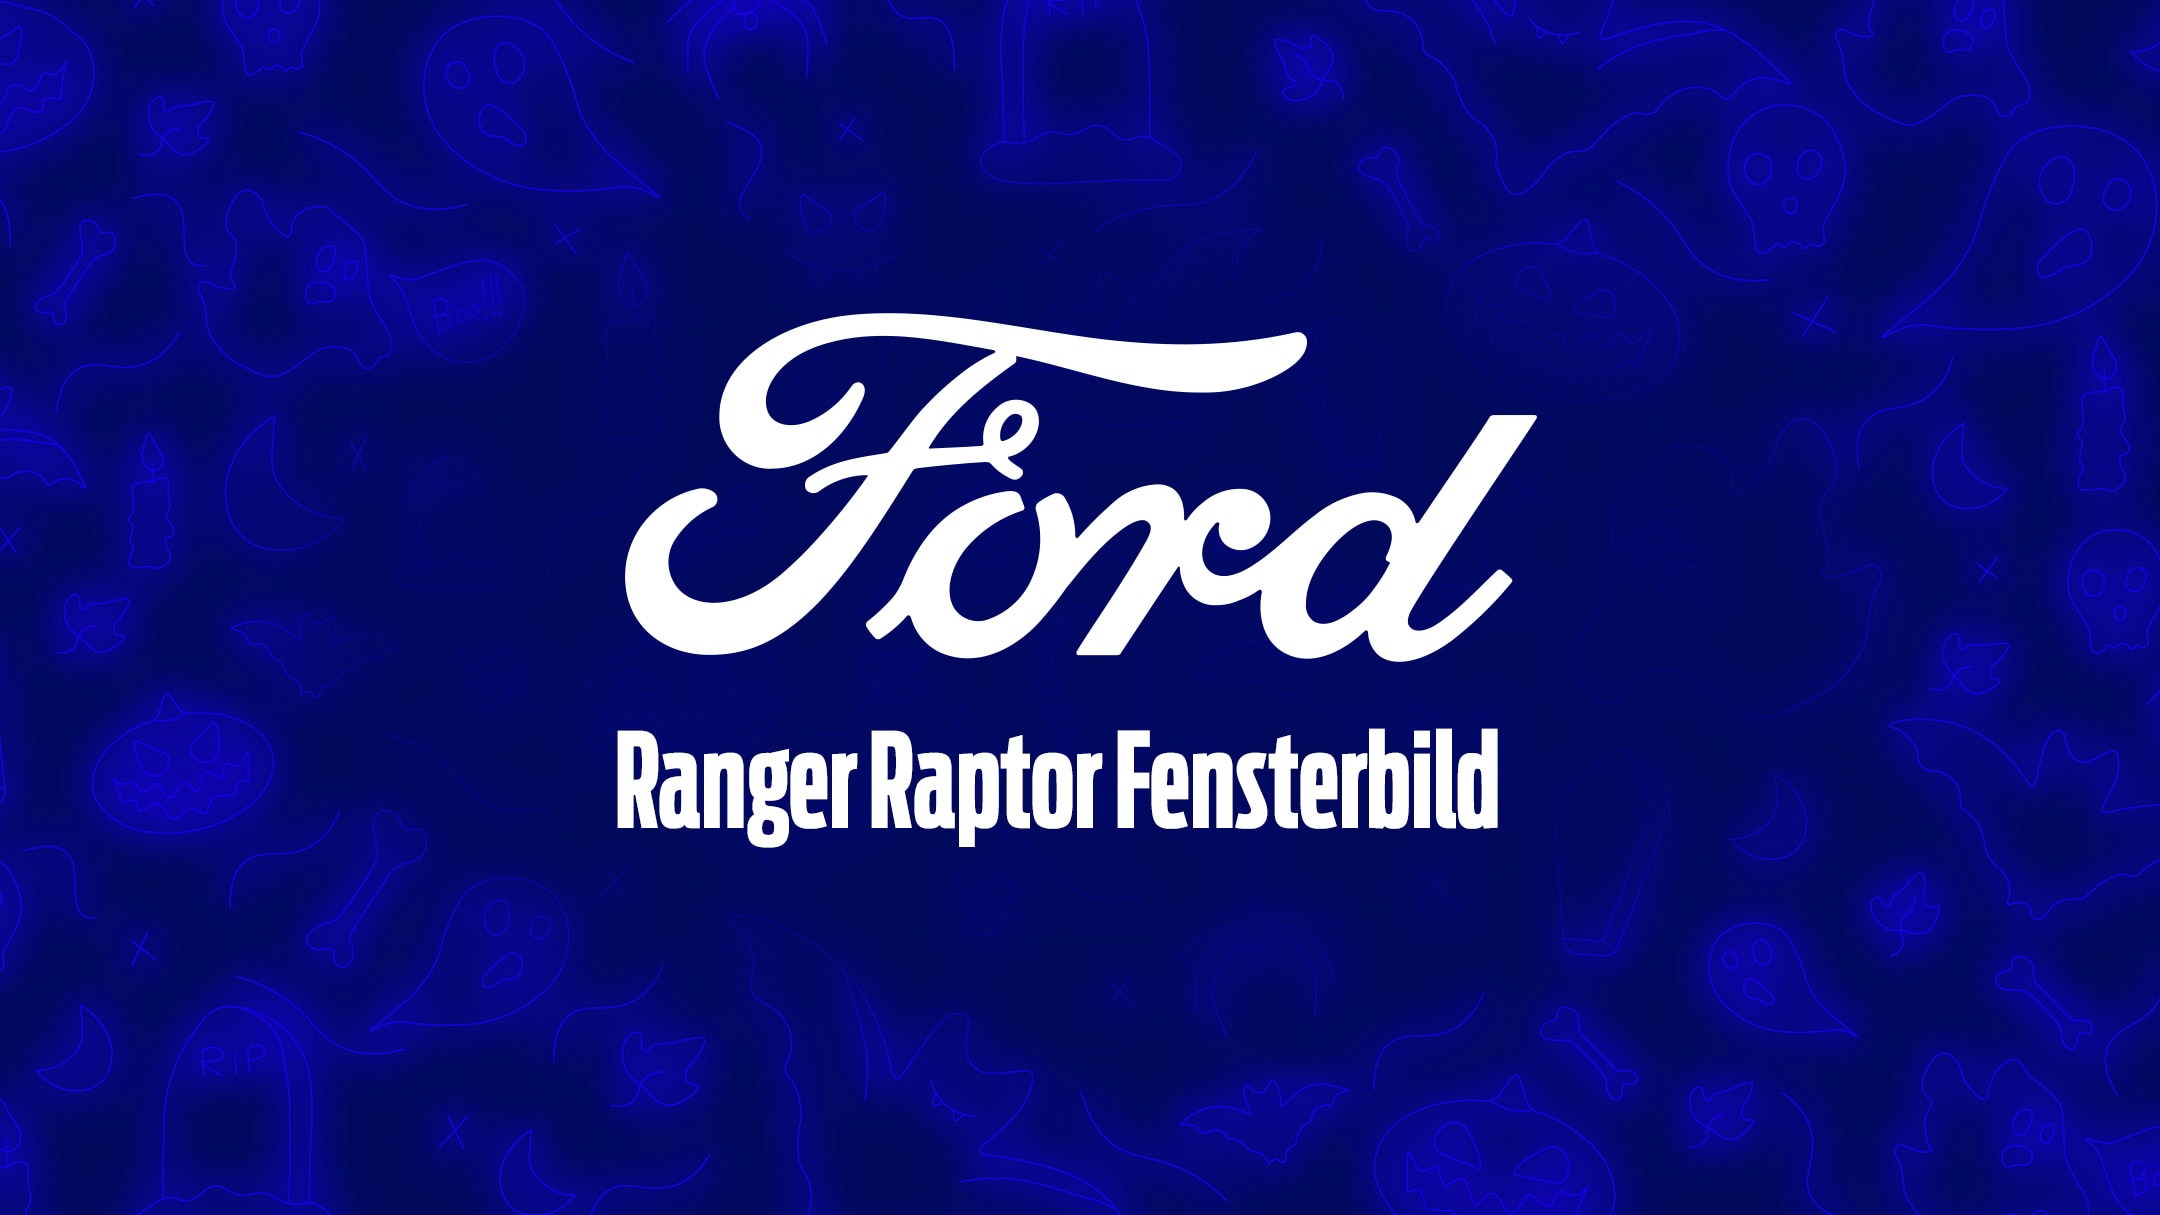 Schauriges Ford Ranger Raptor Fensterbild